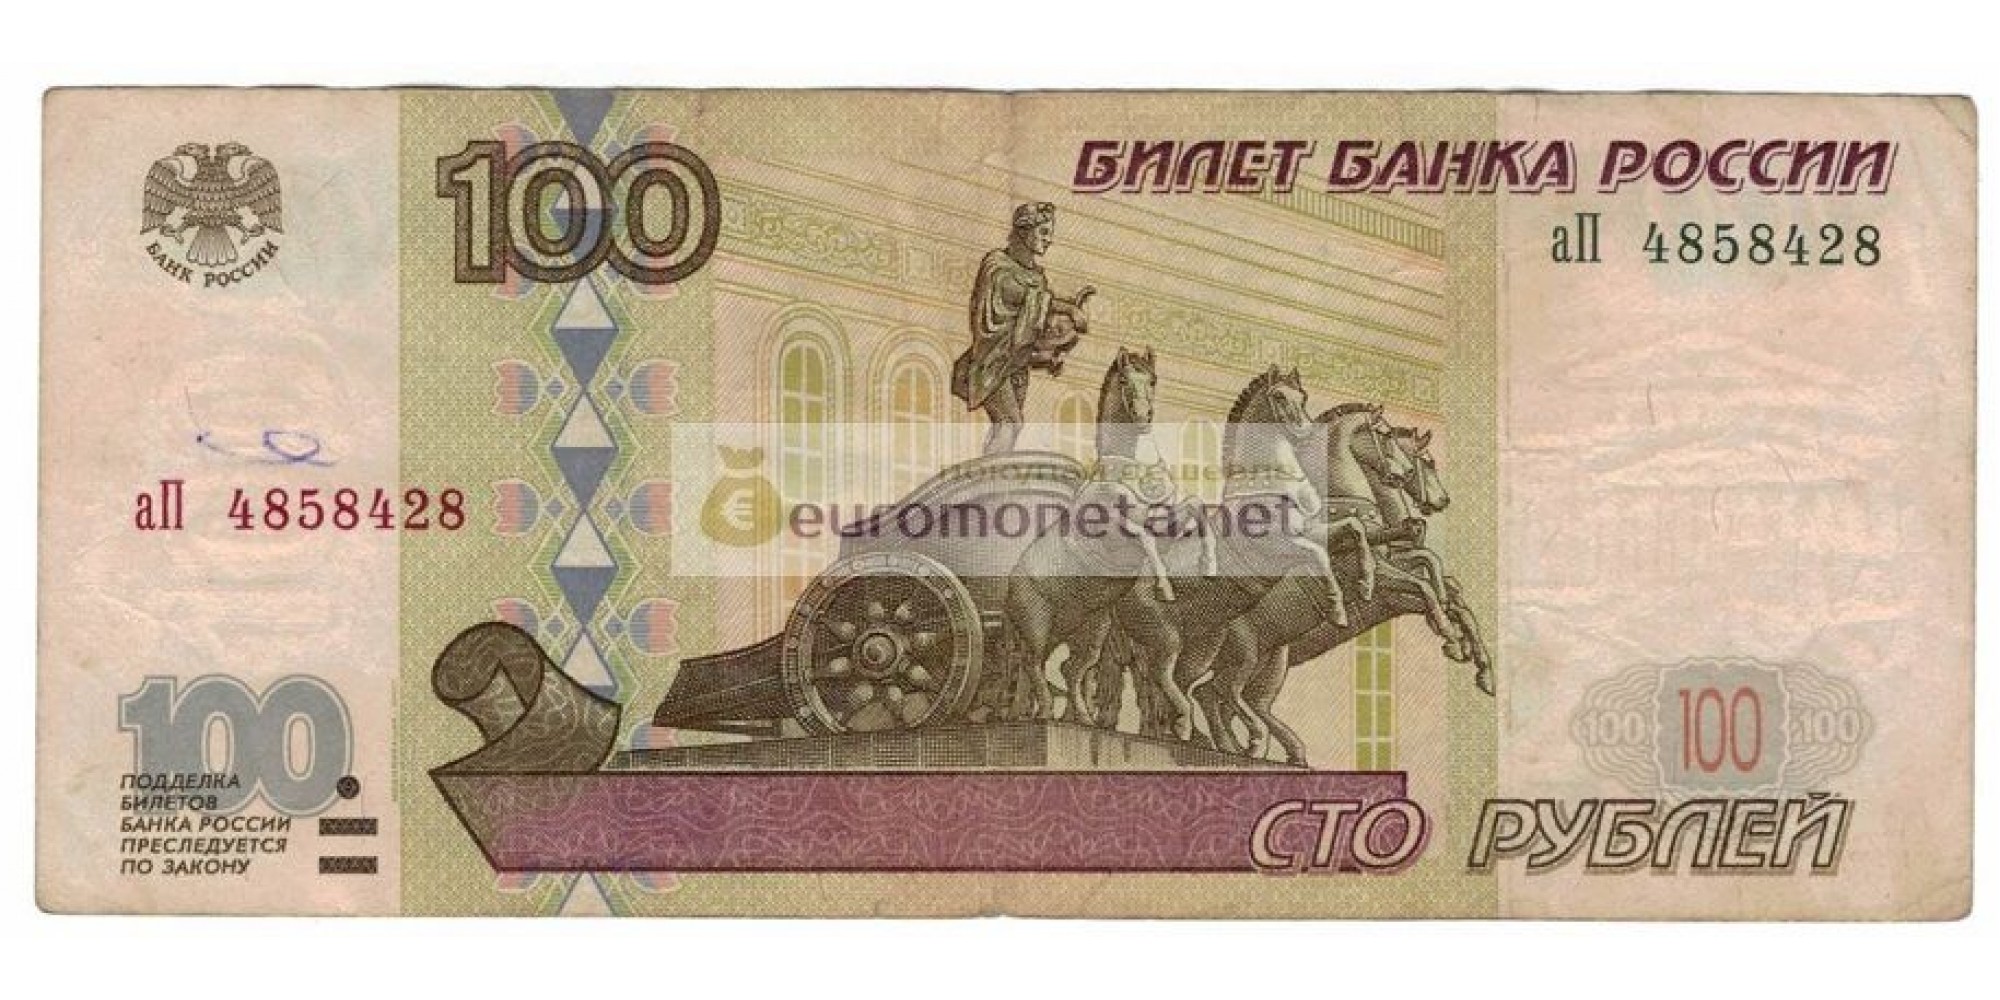 Россия 100 рублей 1997 год модификация 2001 год серия аП 4858428